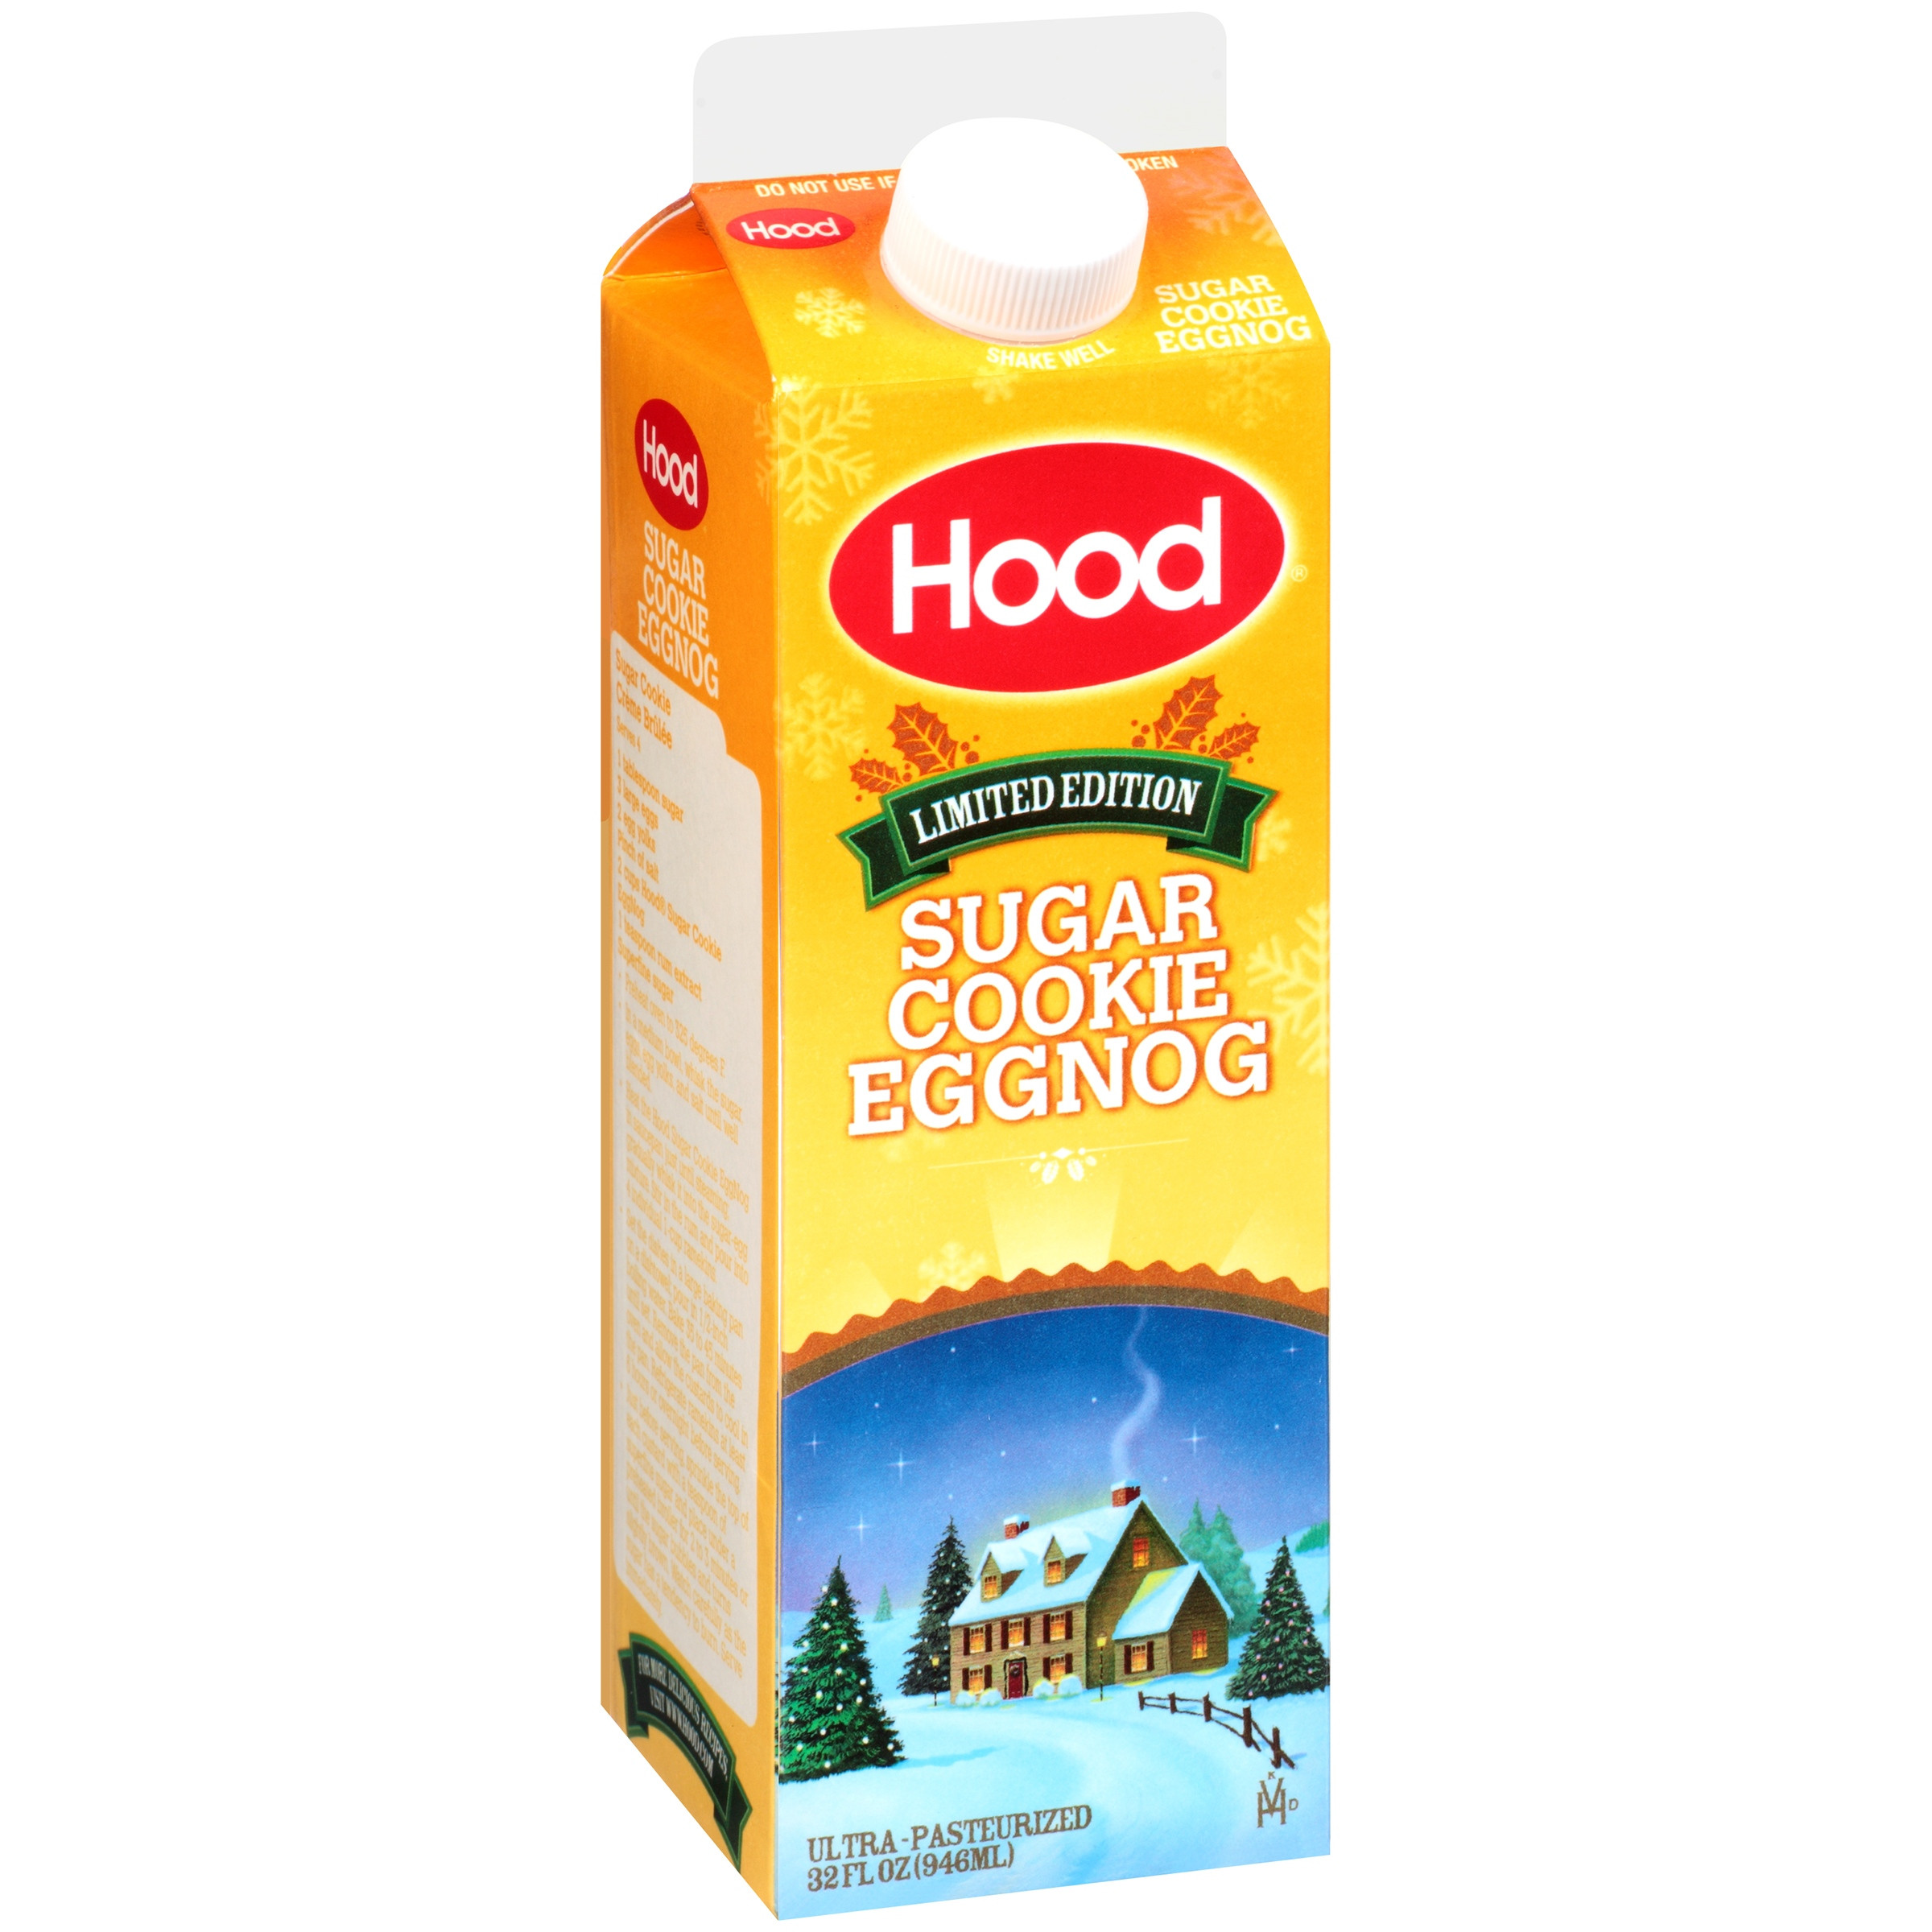 Sugar Cookie Eggnog
 hood sugar cookie eggnog